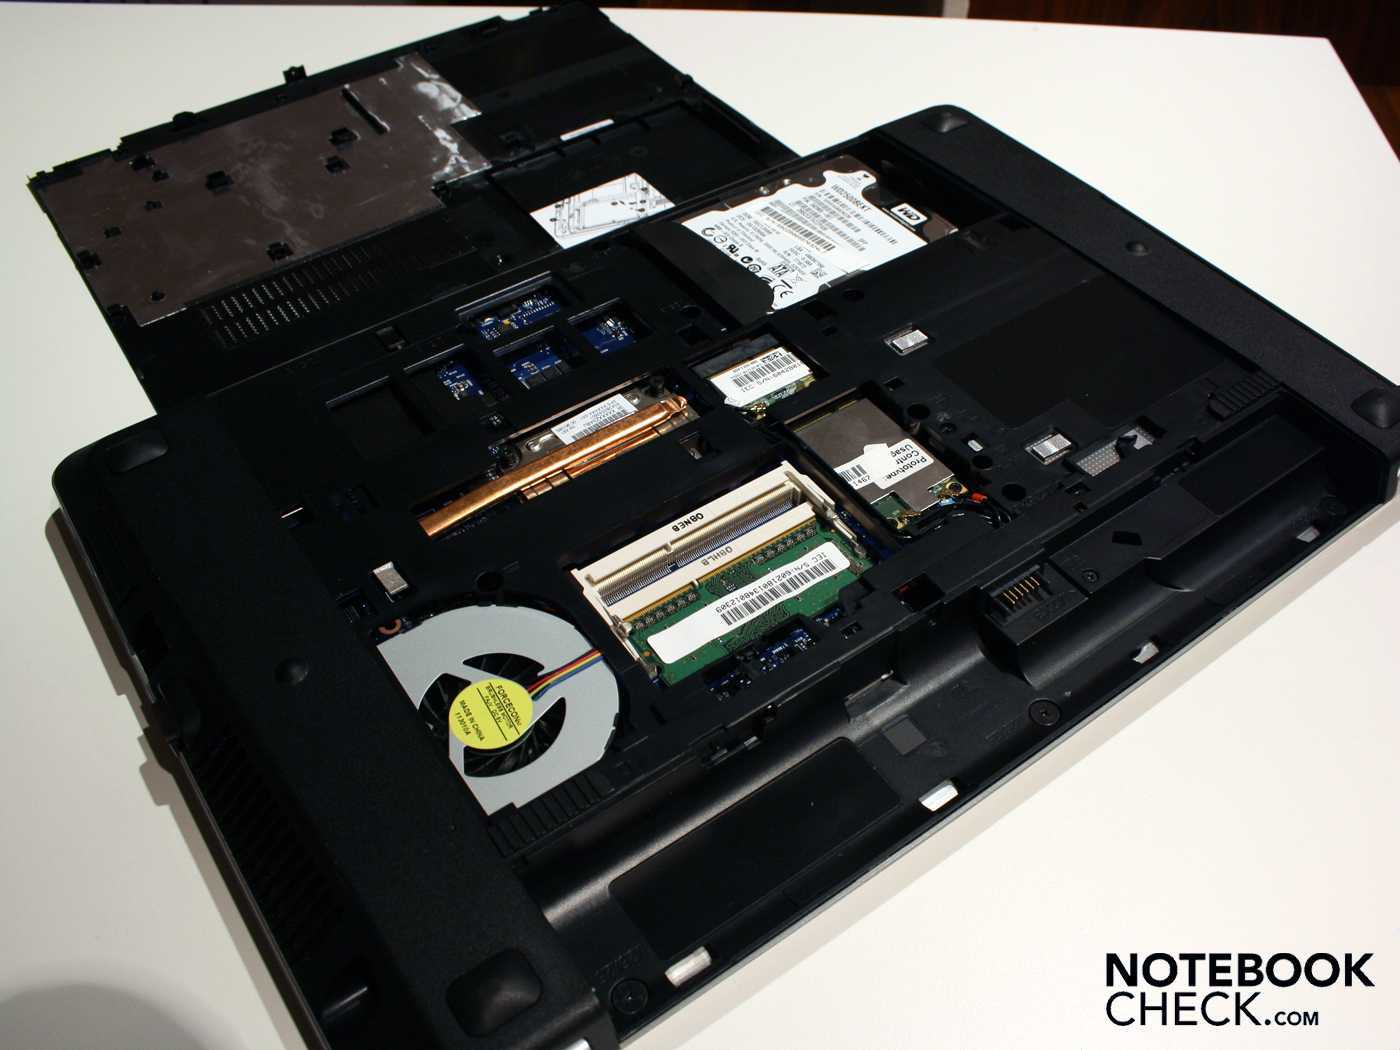 Как вернуть ноутбук к заводским настройкам windows, если recovery-функционал от производителя не работает